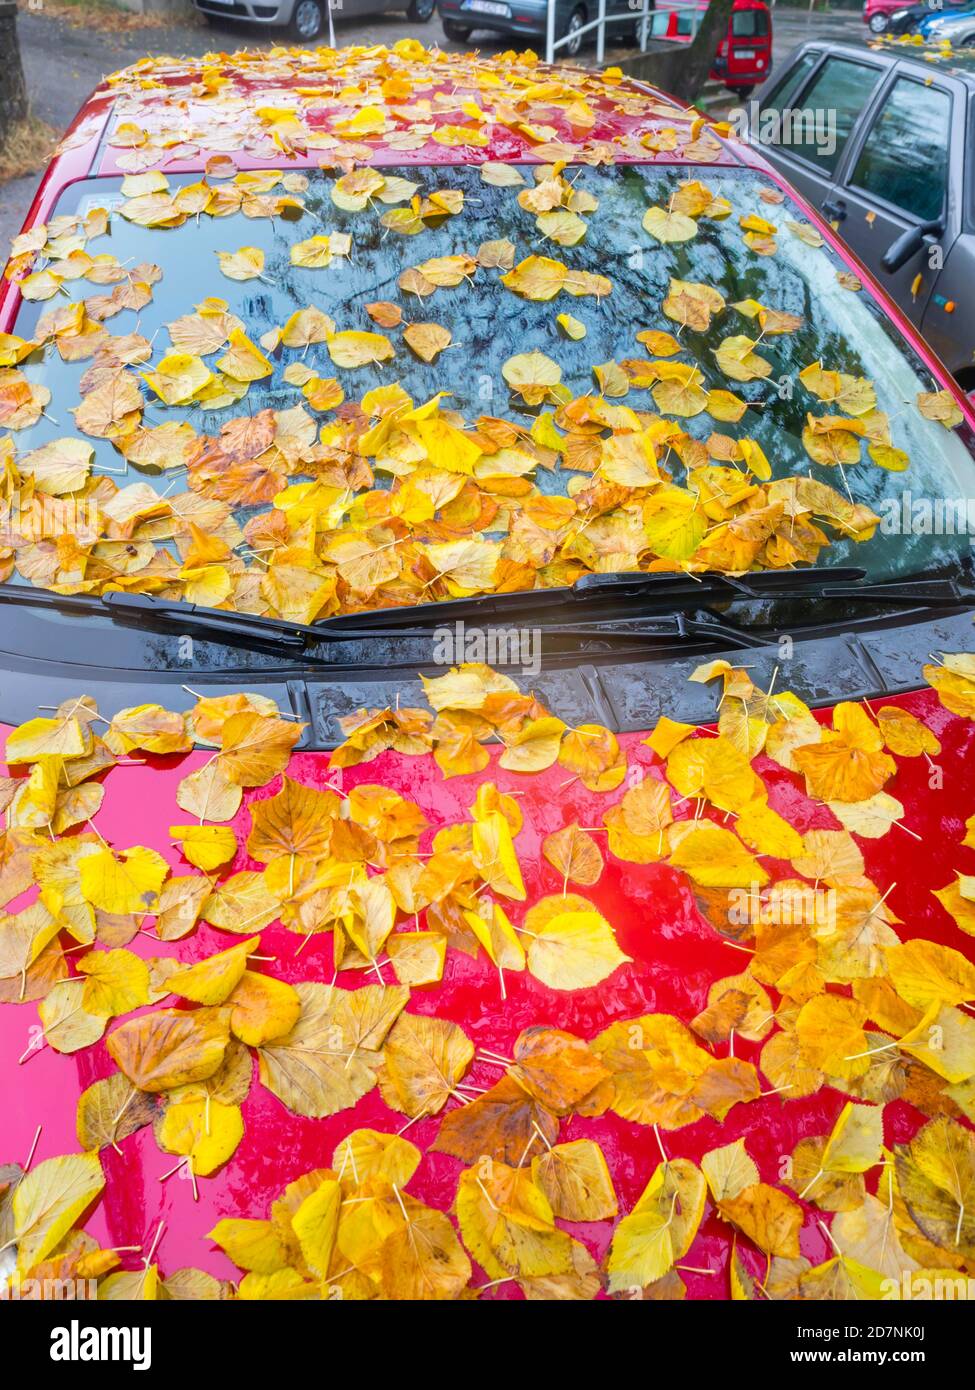 linden caída hojas en la cima Red vehículo estacionado Autumnal Otoño temporada delantera parabrisas corta vista recortada Foto de stock